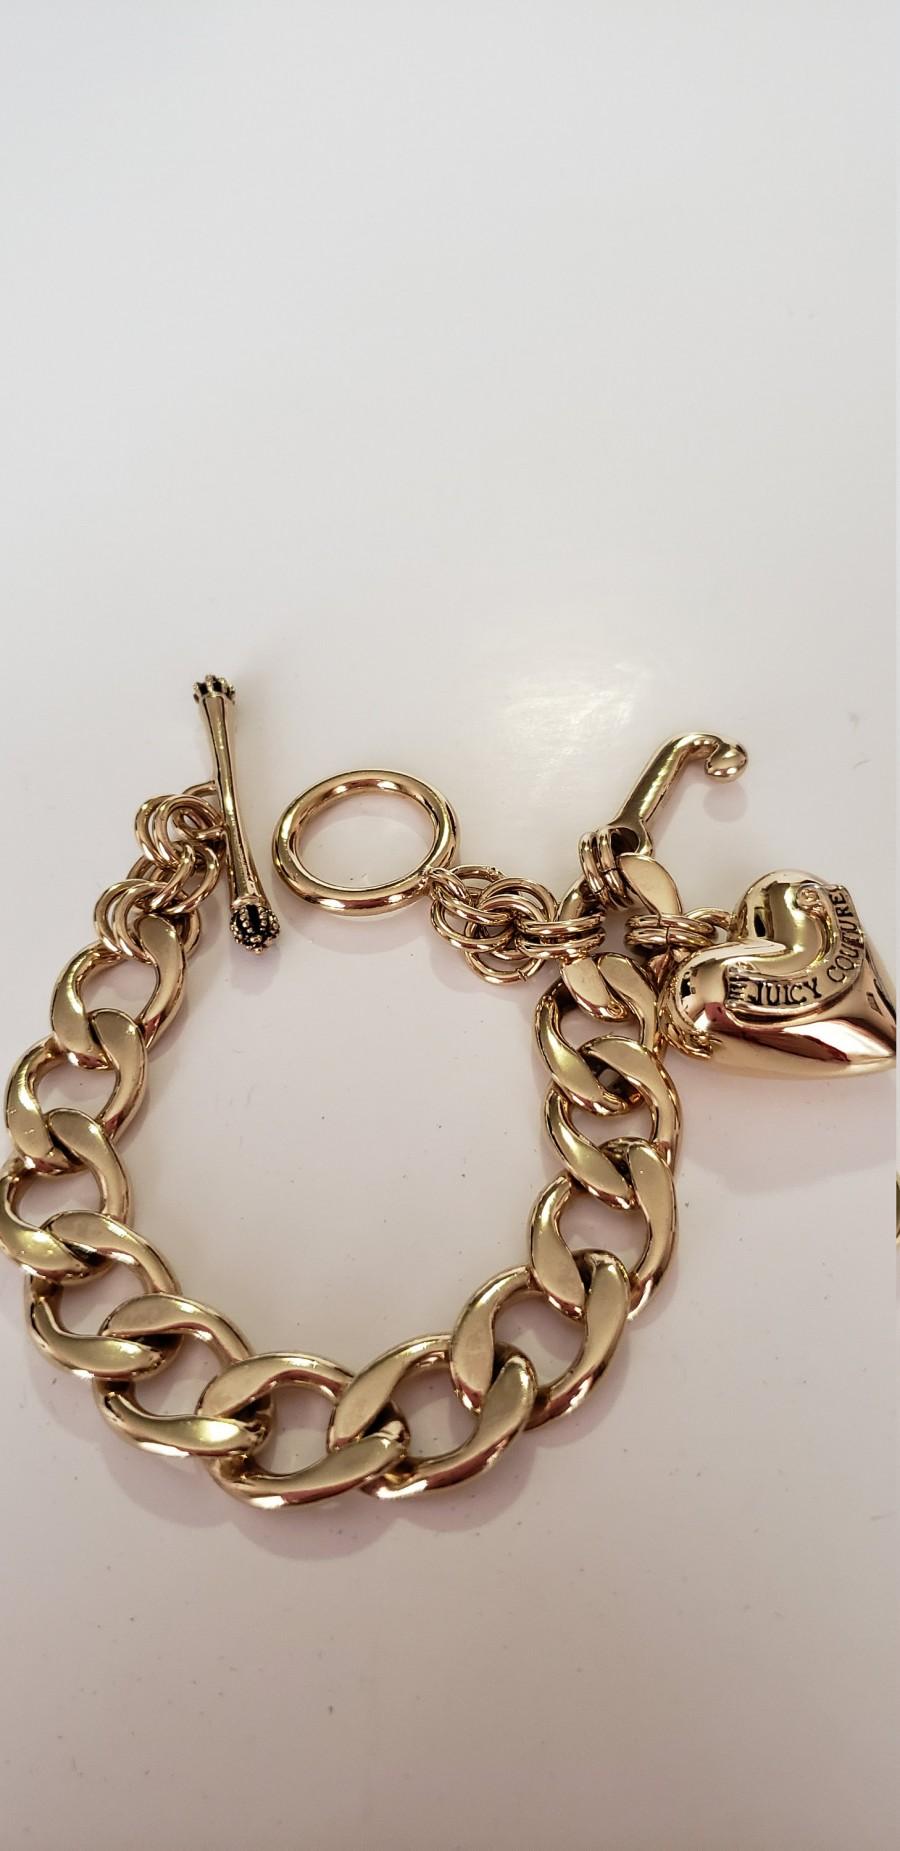 Mariage - Juicy Couture Bracelet.Charm Bracelet.Gold Ton Bracelet.Vintage Charm Bracelet.JC Bracelet.